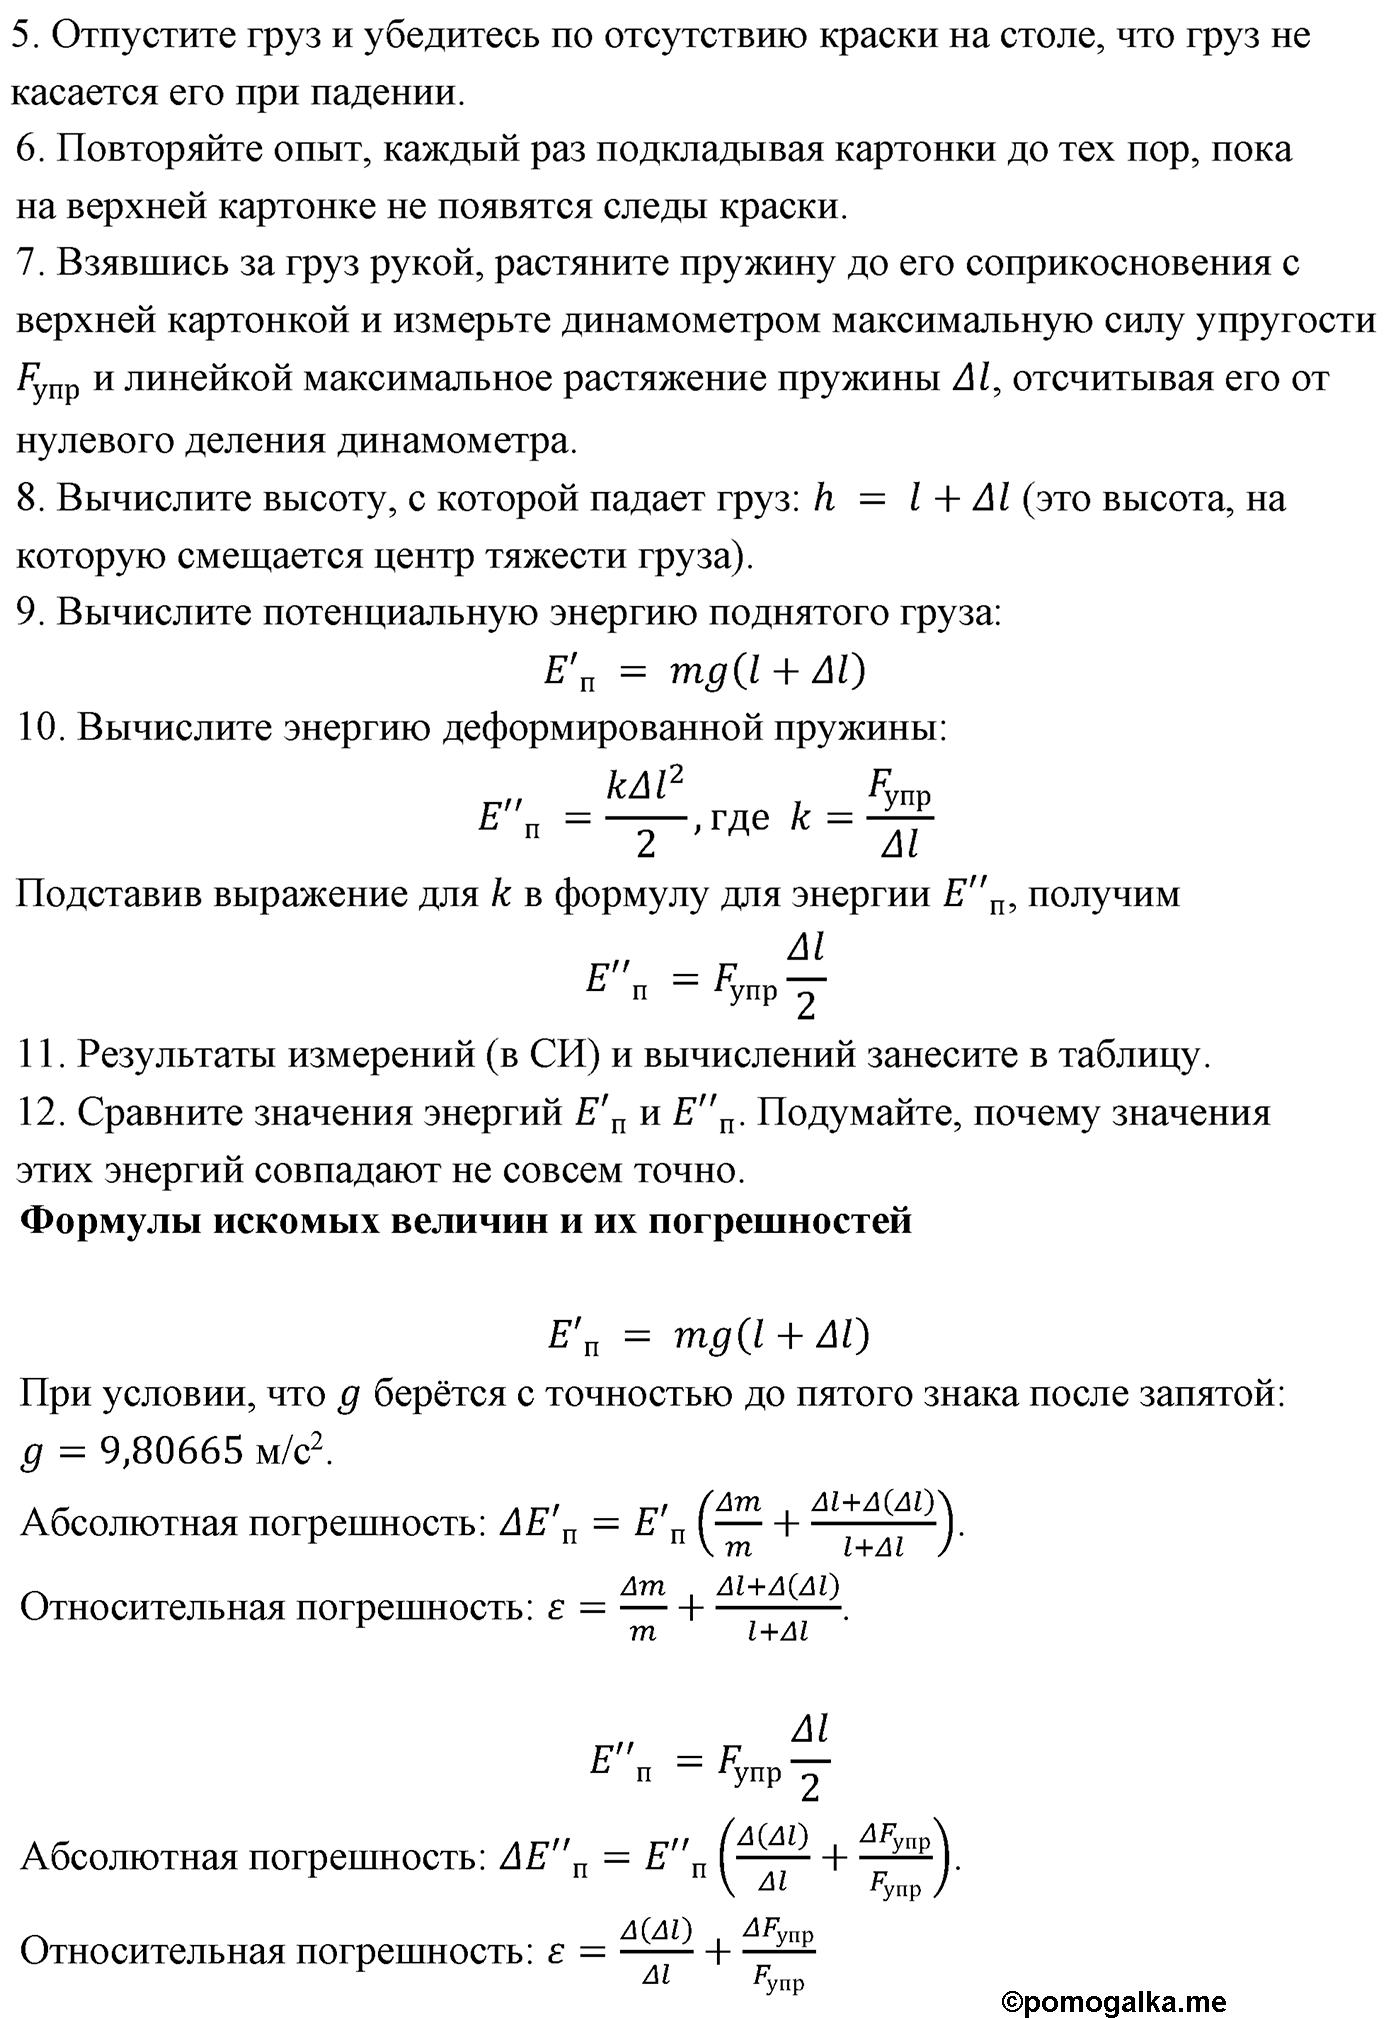 лабораторная работа №5 физика 10 класс Микишев